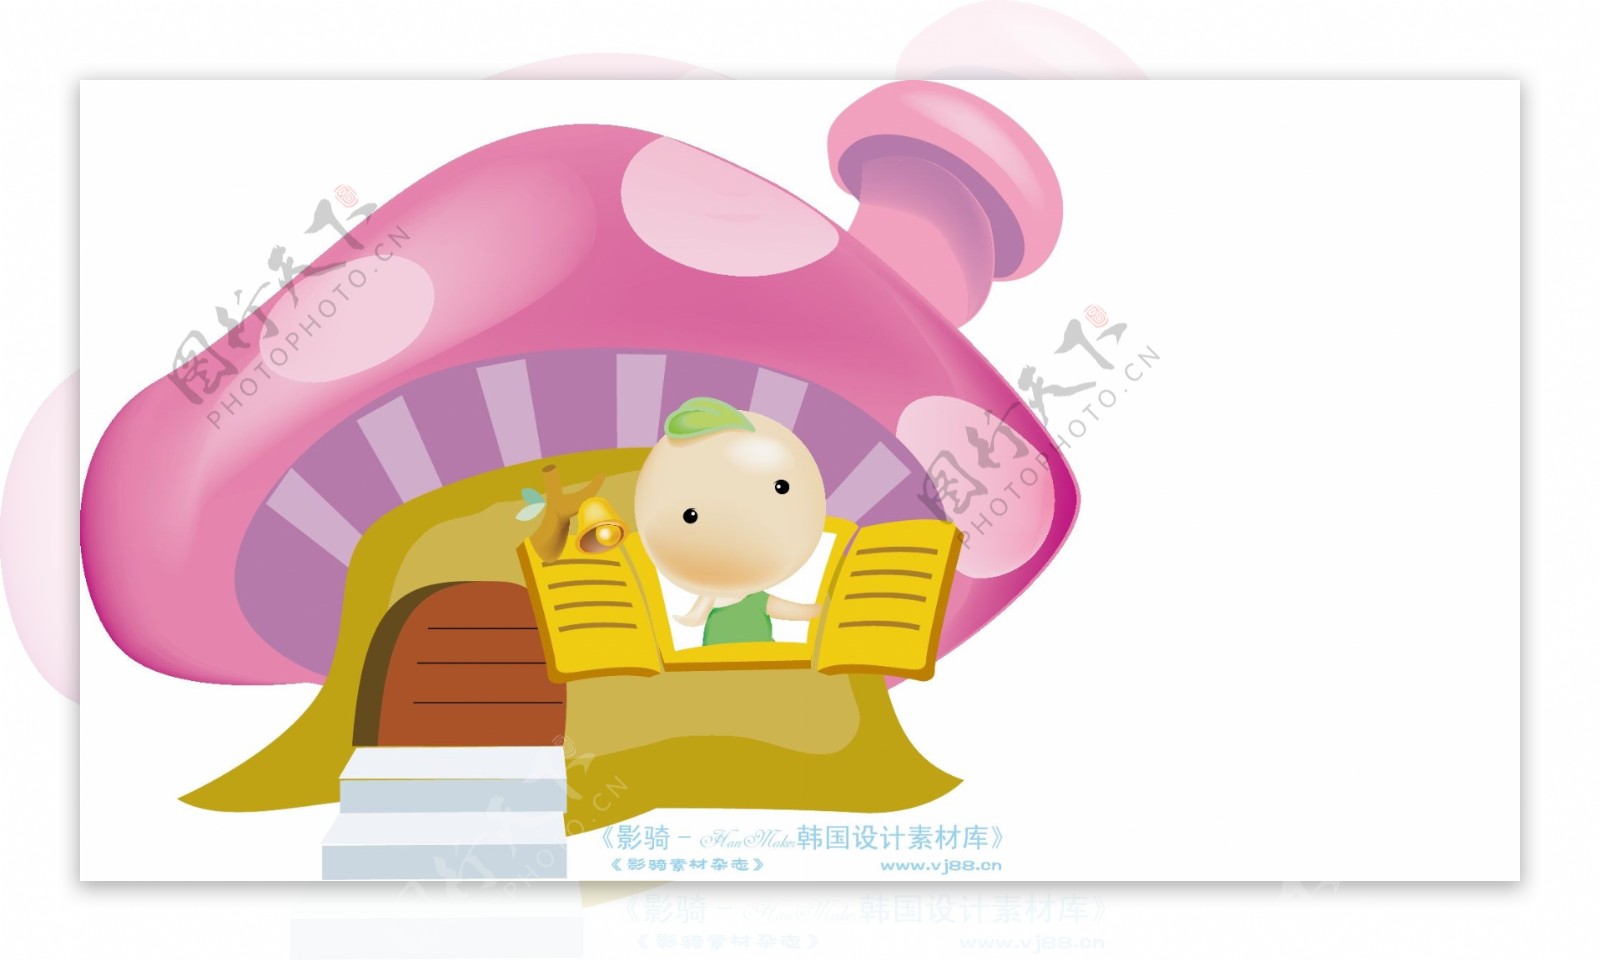 豆豆娃娃卡通人物矢量素材矢量图片HanMaker韩国设计素材库